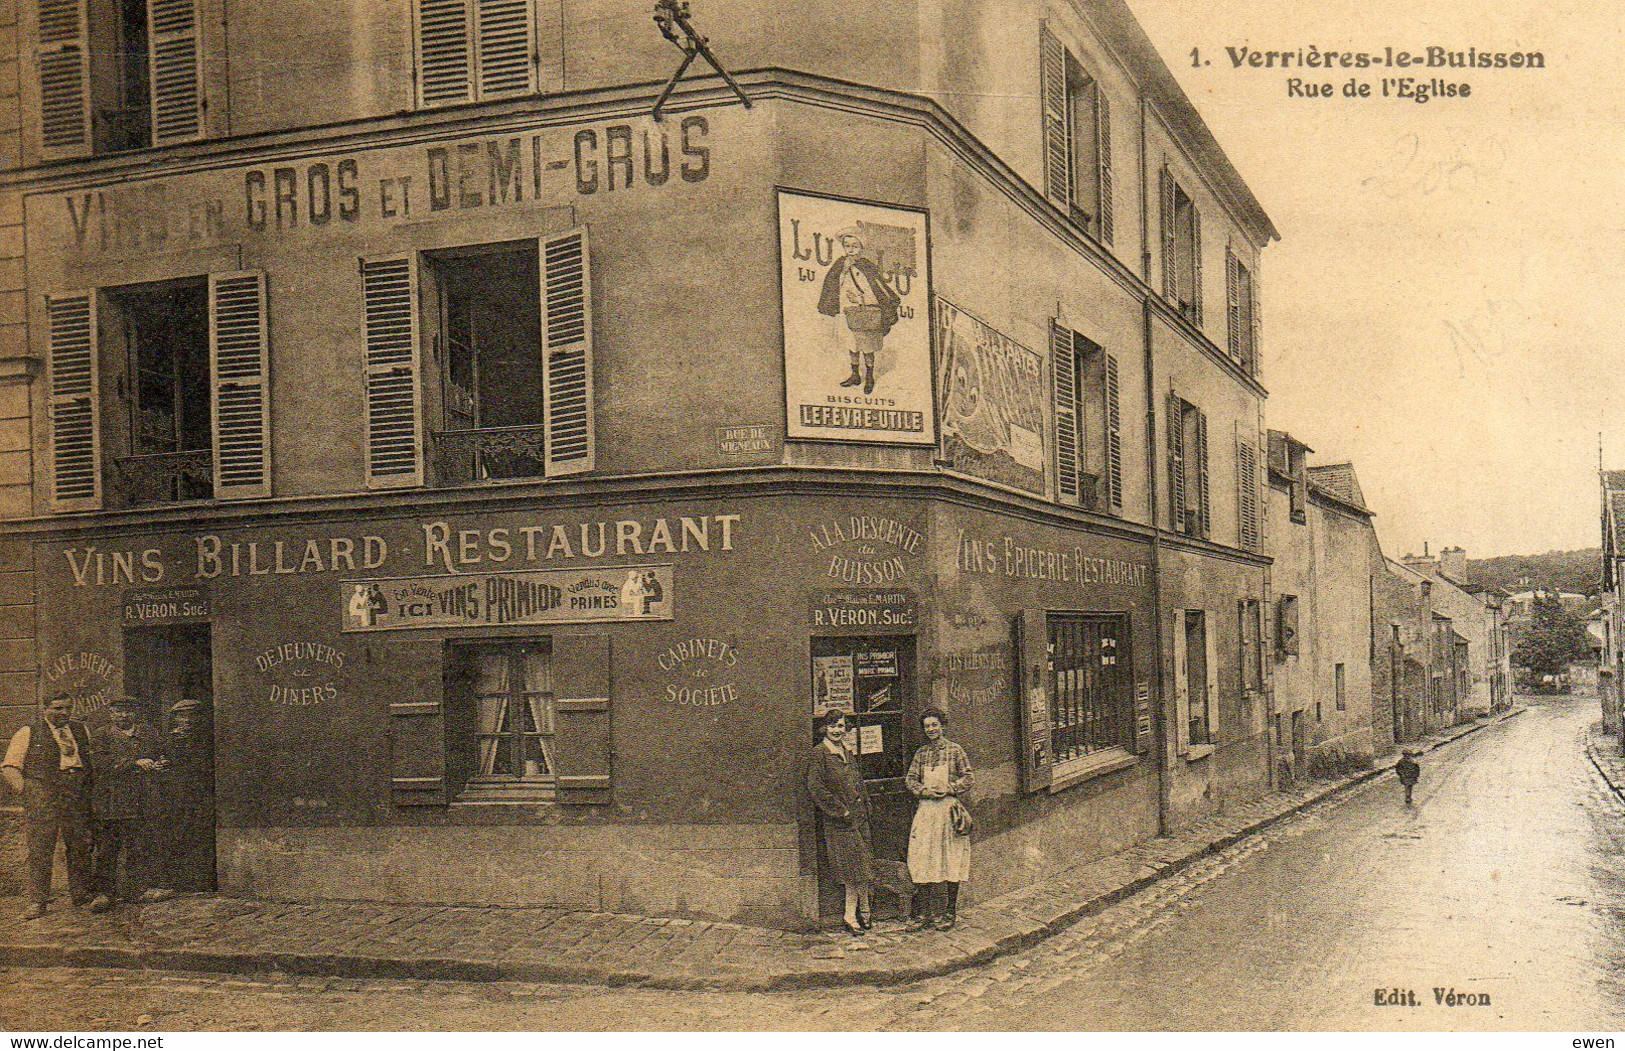 Verrières-le-Buisson. Rue De L'Eglise. (Café-restaurant). Pub Lefèvre-Utile - Verrieres Le Buisson